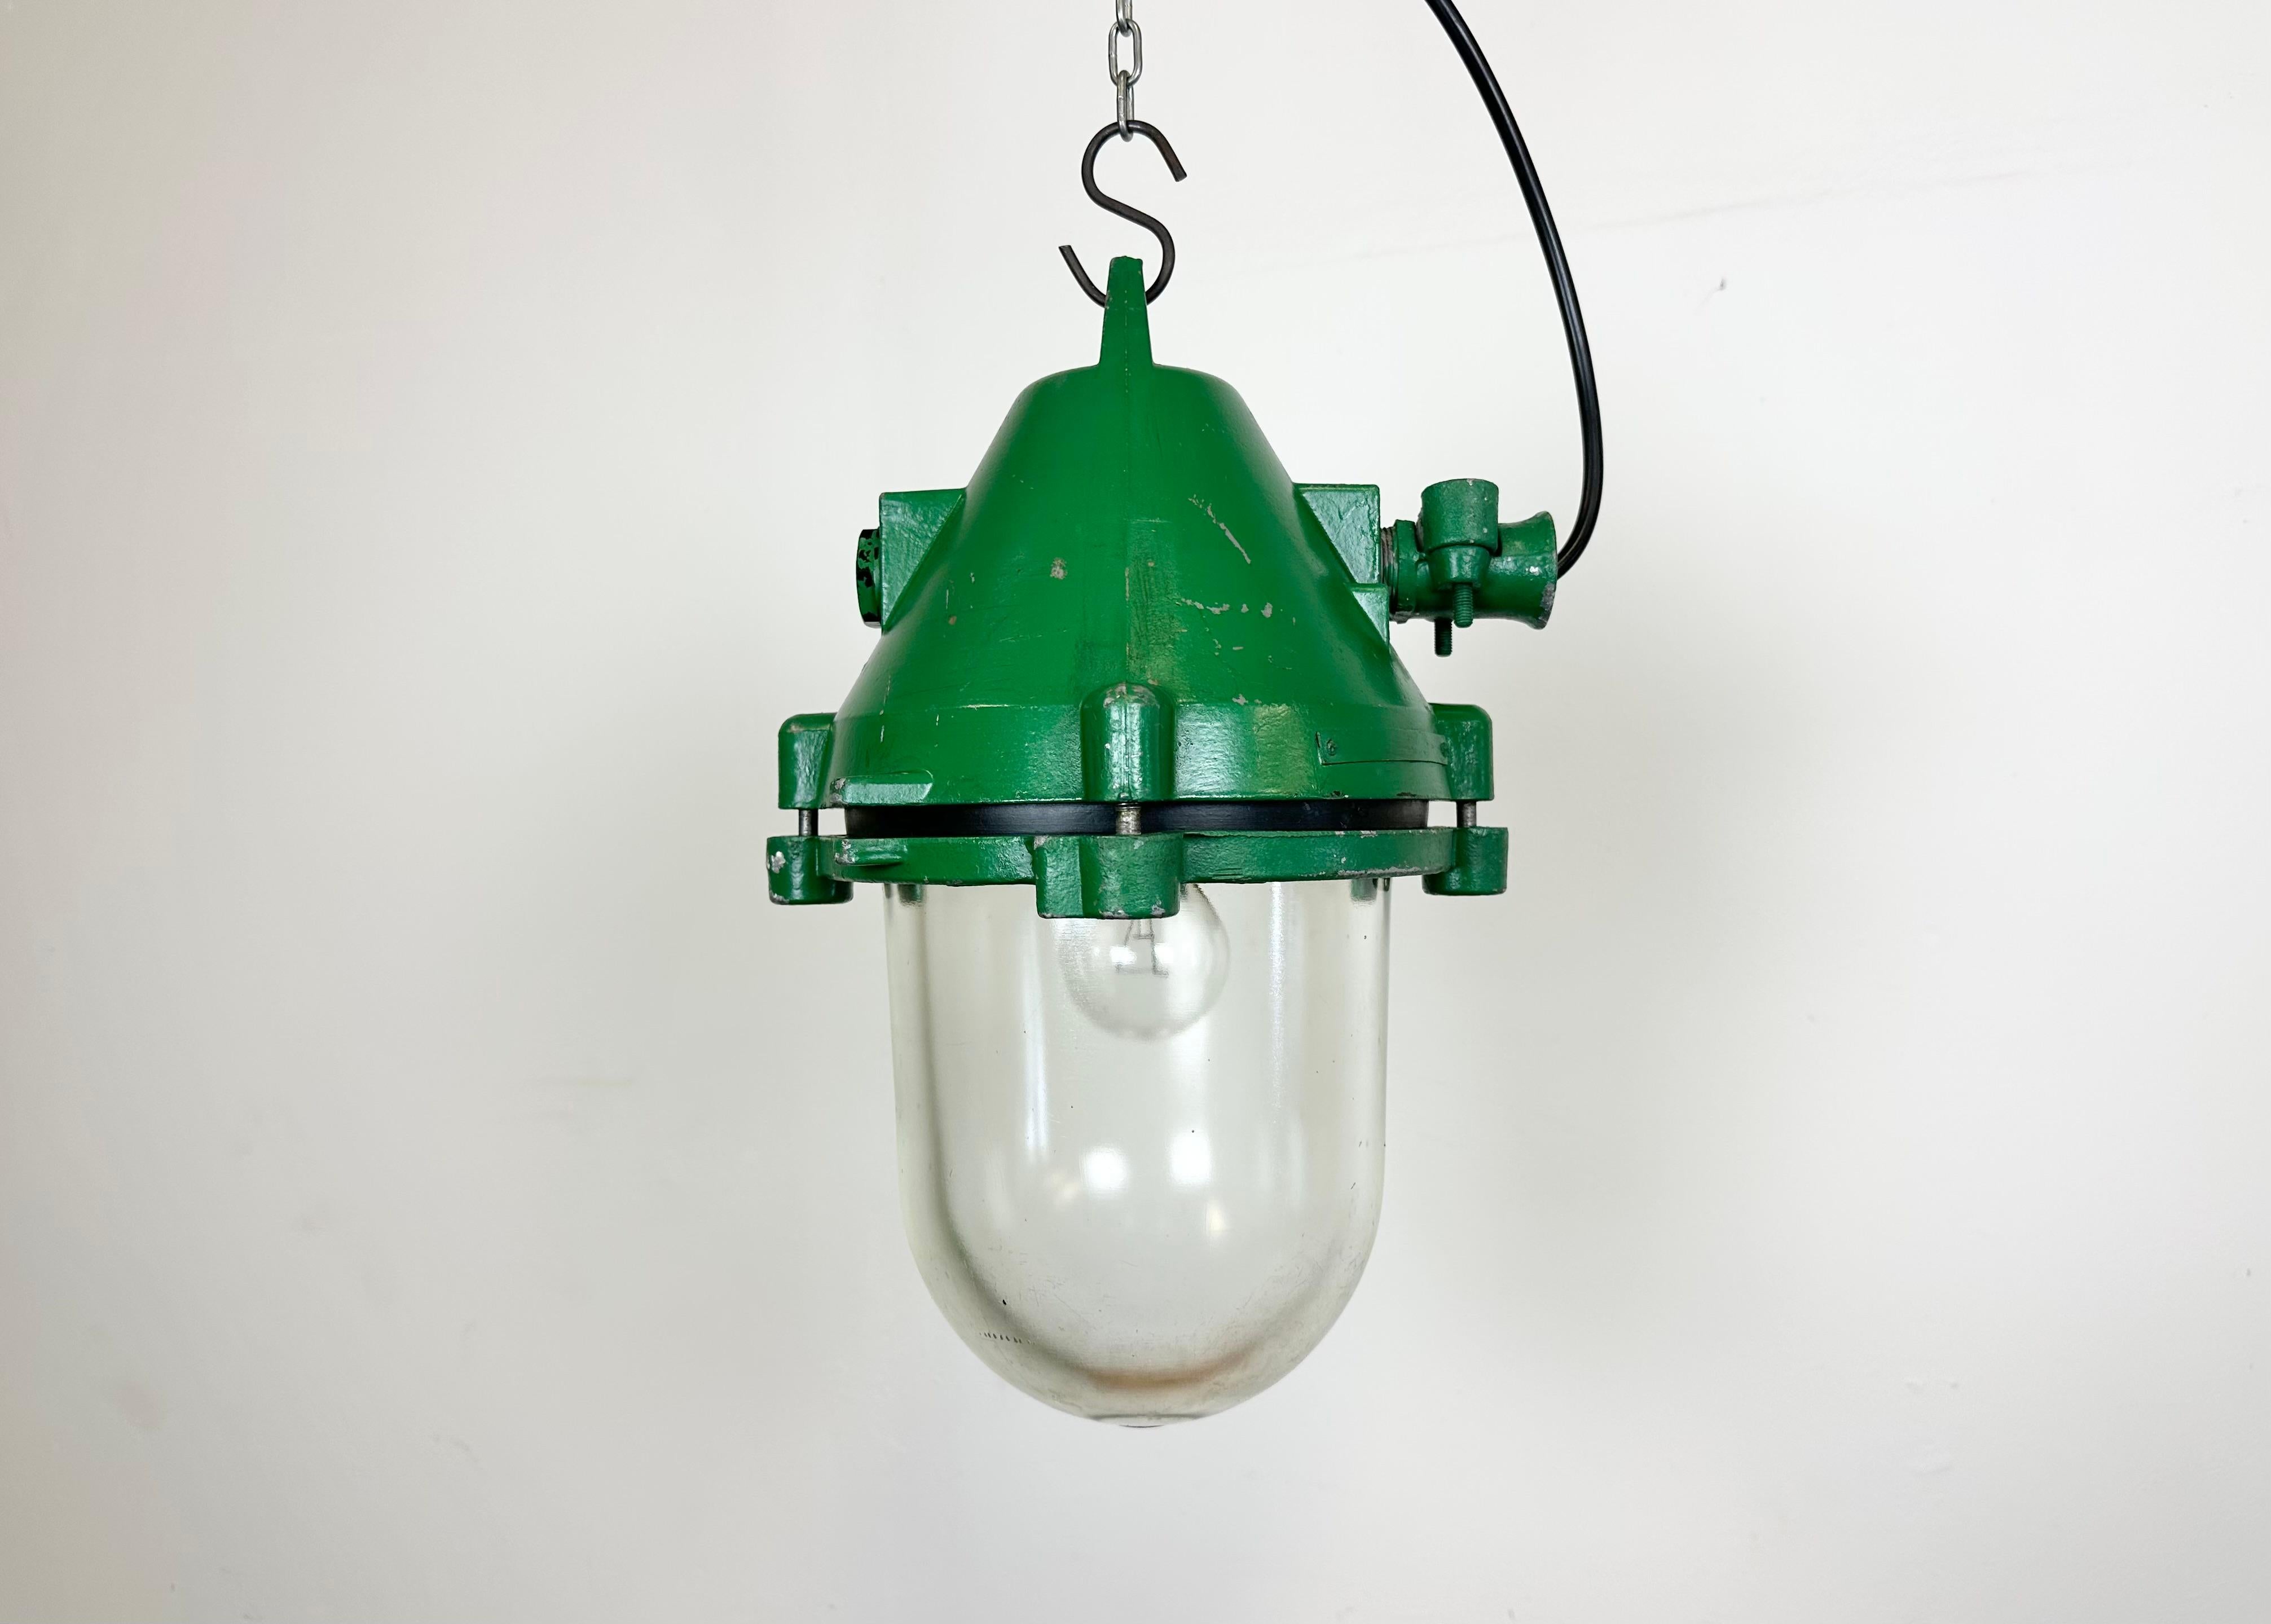 Lampe industrielle verte antidéflagrante avec ampoule en verre massif de protection. Fabriqué dans l'ancienne Tchécoslovaquie par Elektrosvit dans les années 1970. Il se compose d'un corps en aluminium moulé et d'un couvercle en verre transparent.